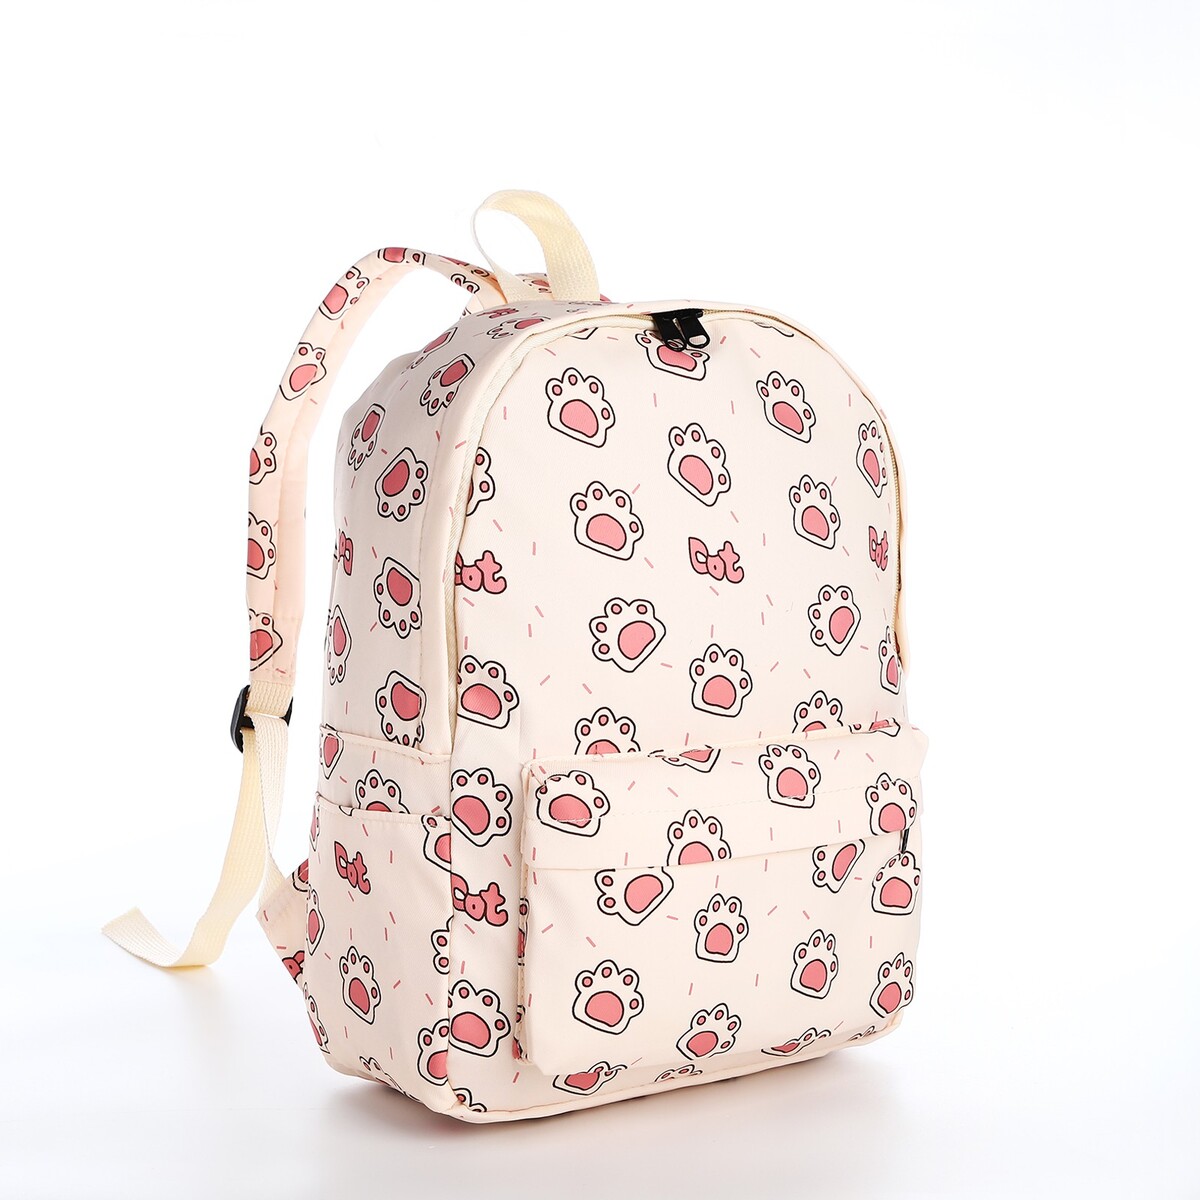 Рюкзак школьный из текстиля на молнии, 3 кармана, цвет бежевый/розовый рюкзак молодежный из текстиля на молнии 3 кармана серо бежевый